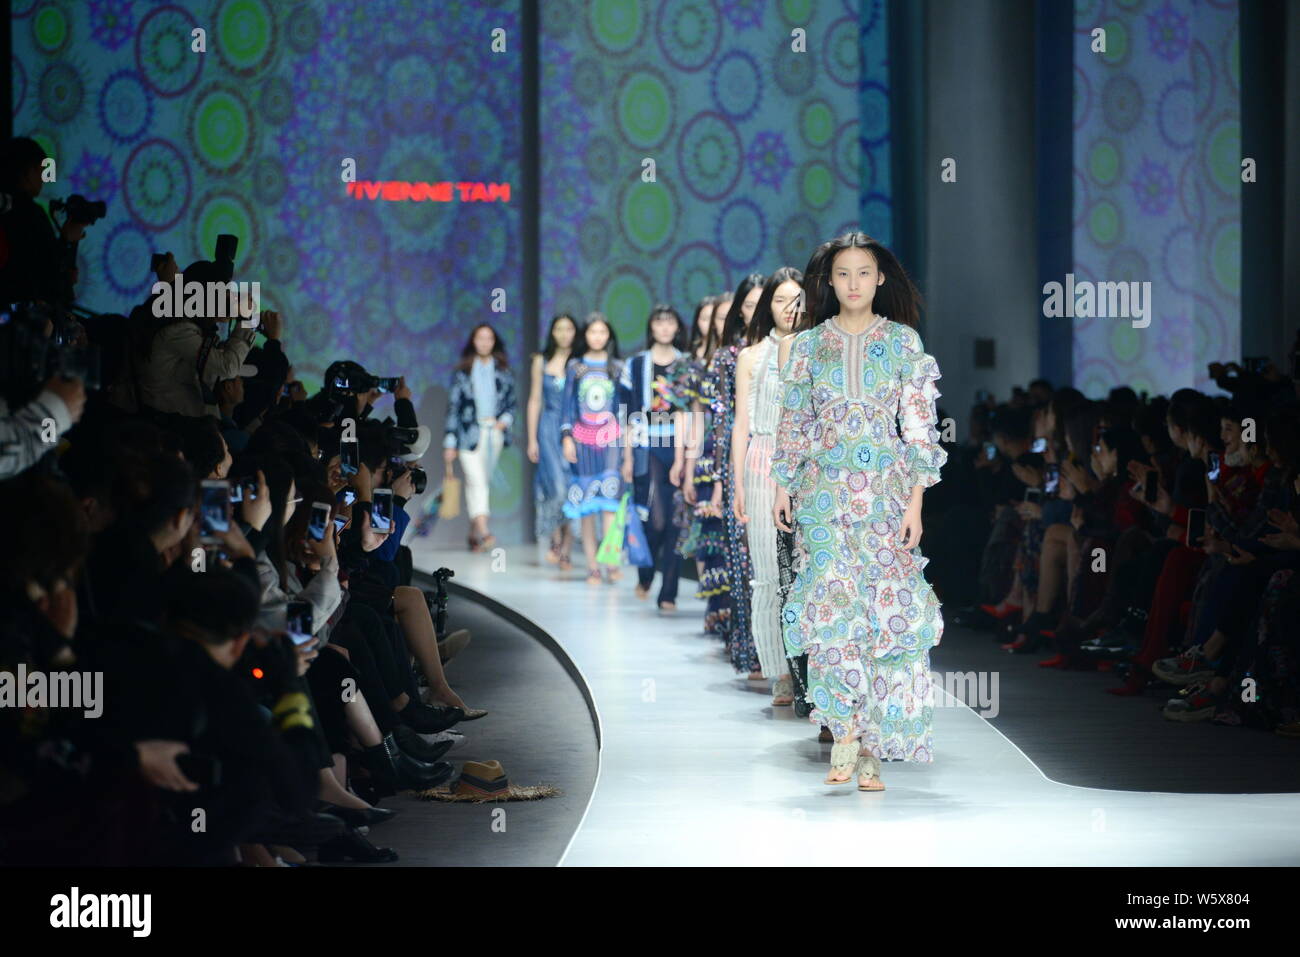 Visualizzazione modelli nuove creazioni alla sfilata di moda di marca internazionale di notte: Vivienne Tam durante la Cina la settimana della moda primavera/estate 2019 in Beijin Foto Stock